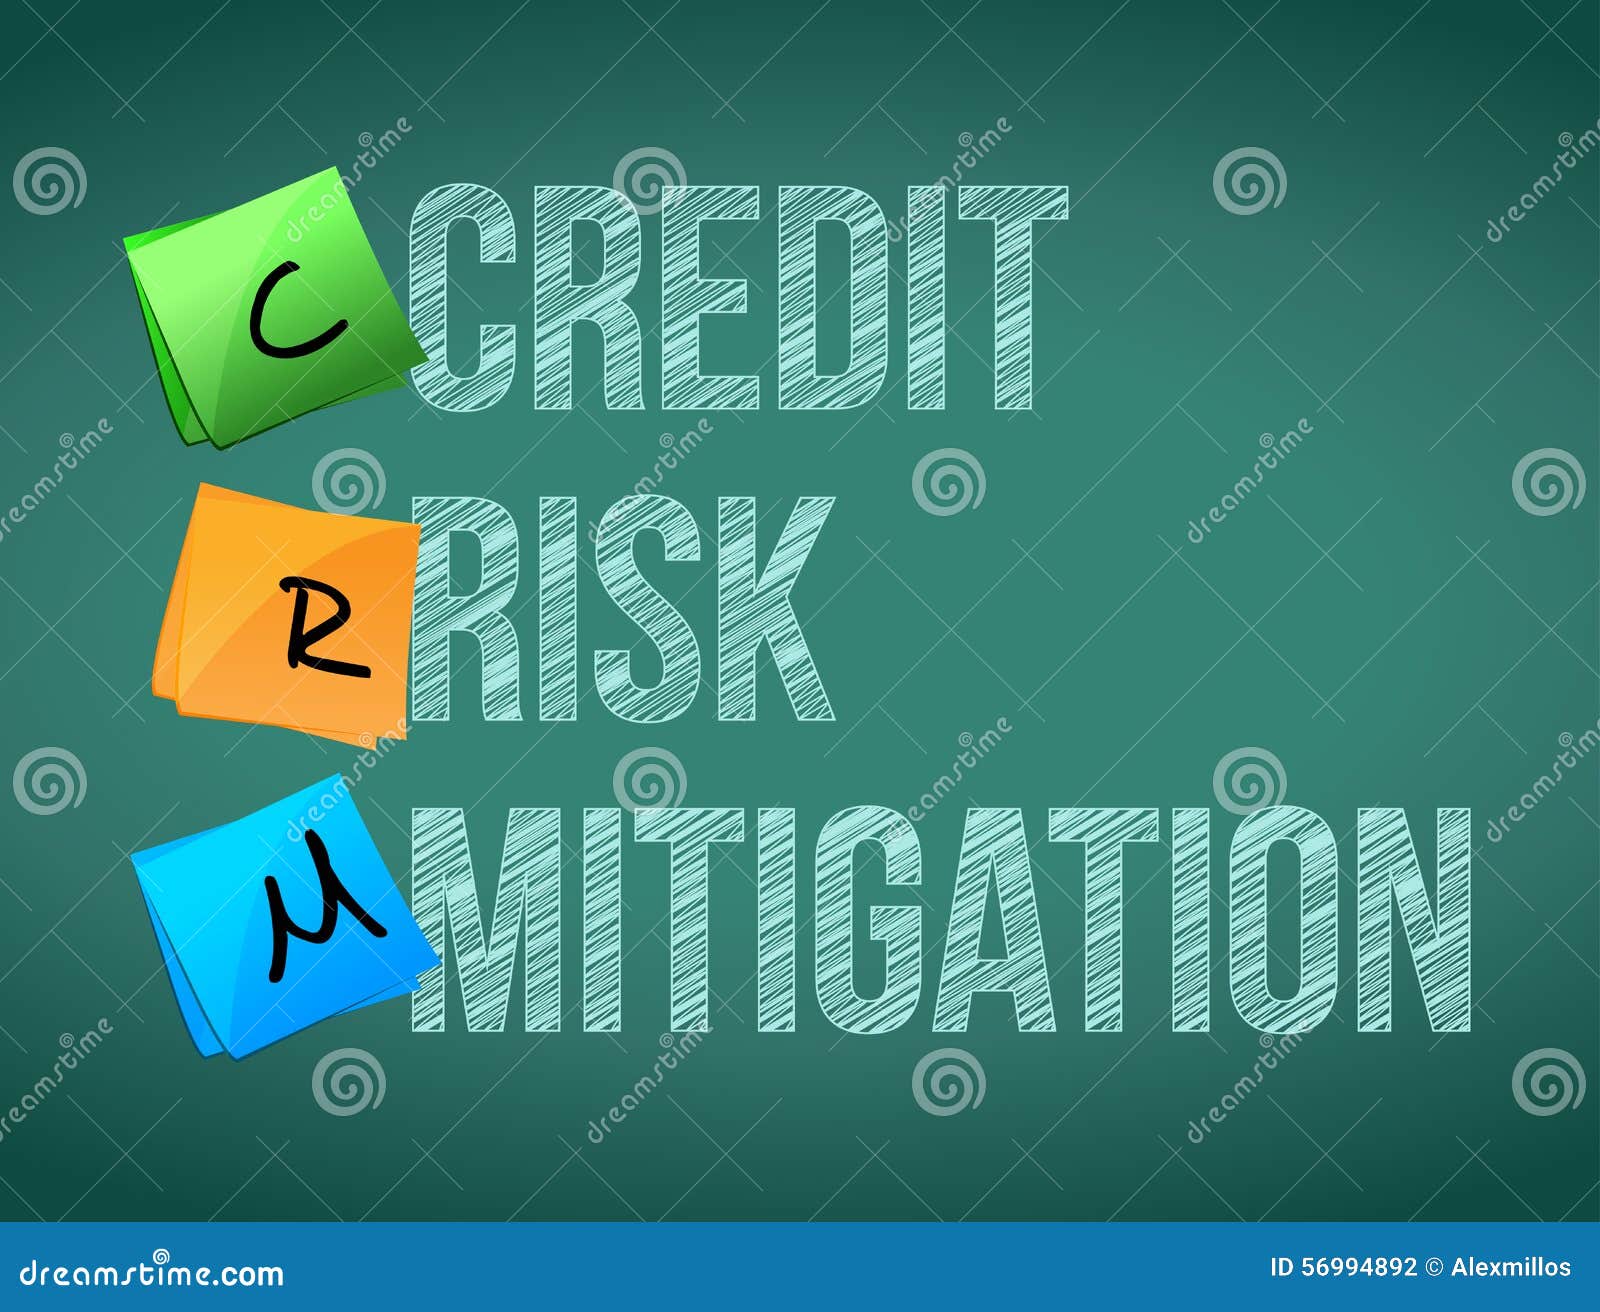 credit risk mitigation post memo chalkboard sign